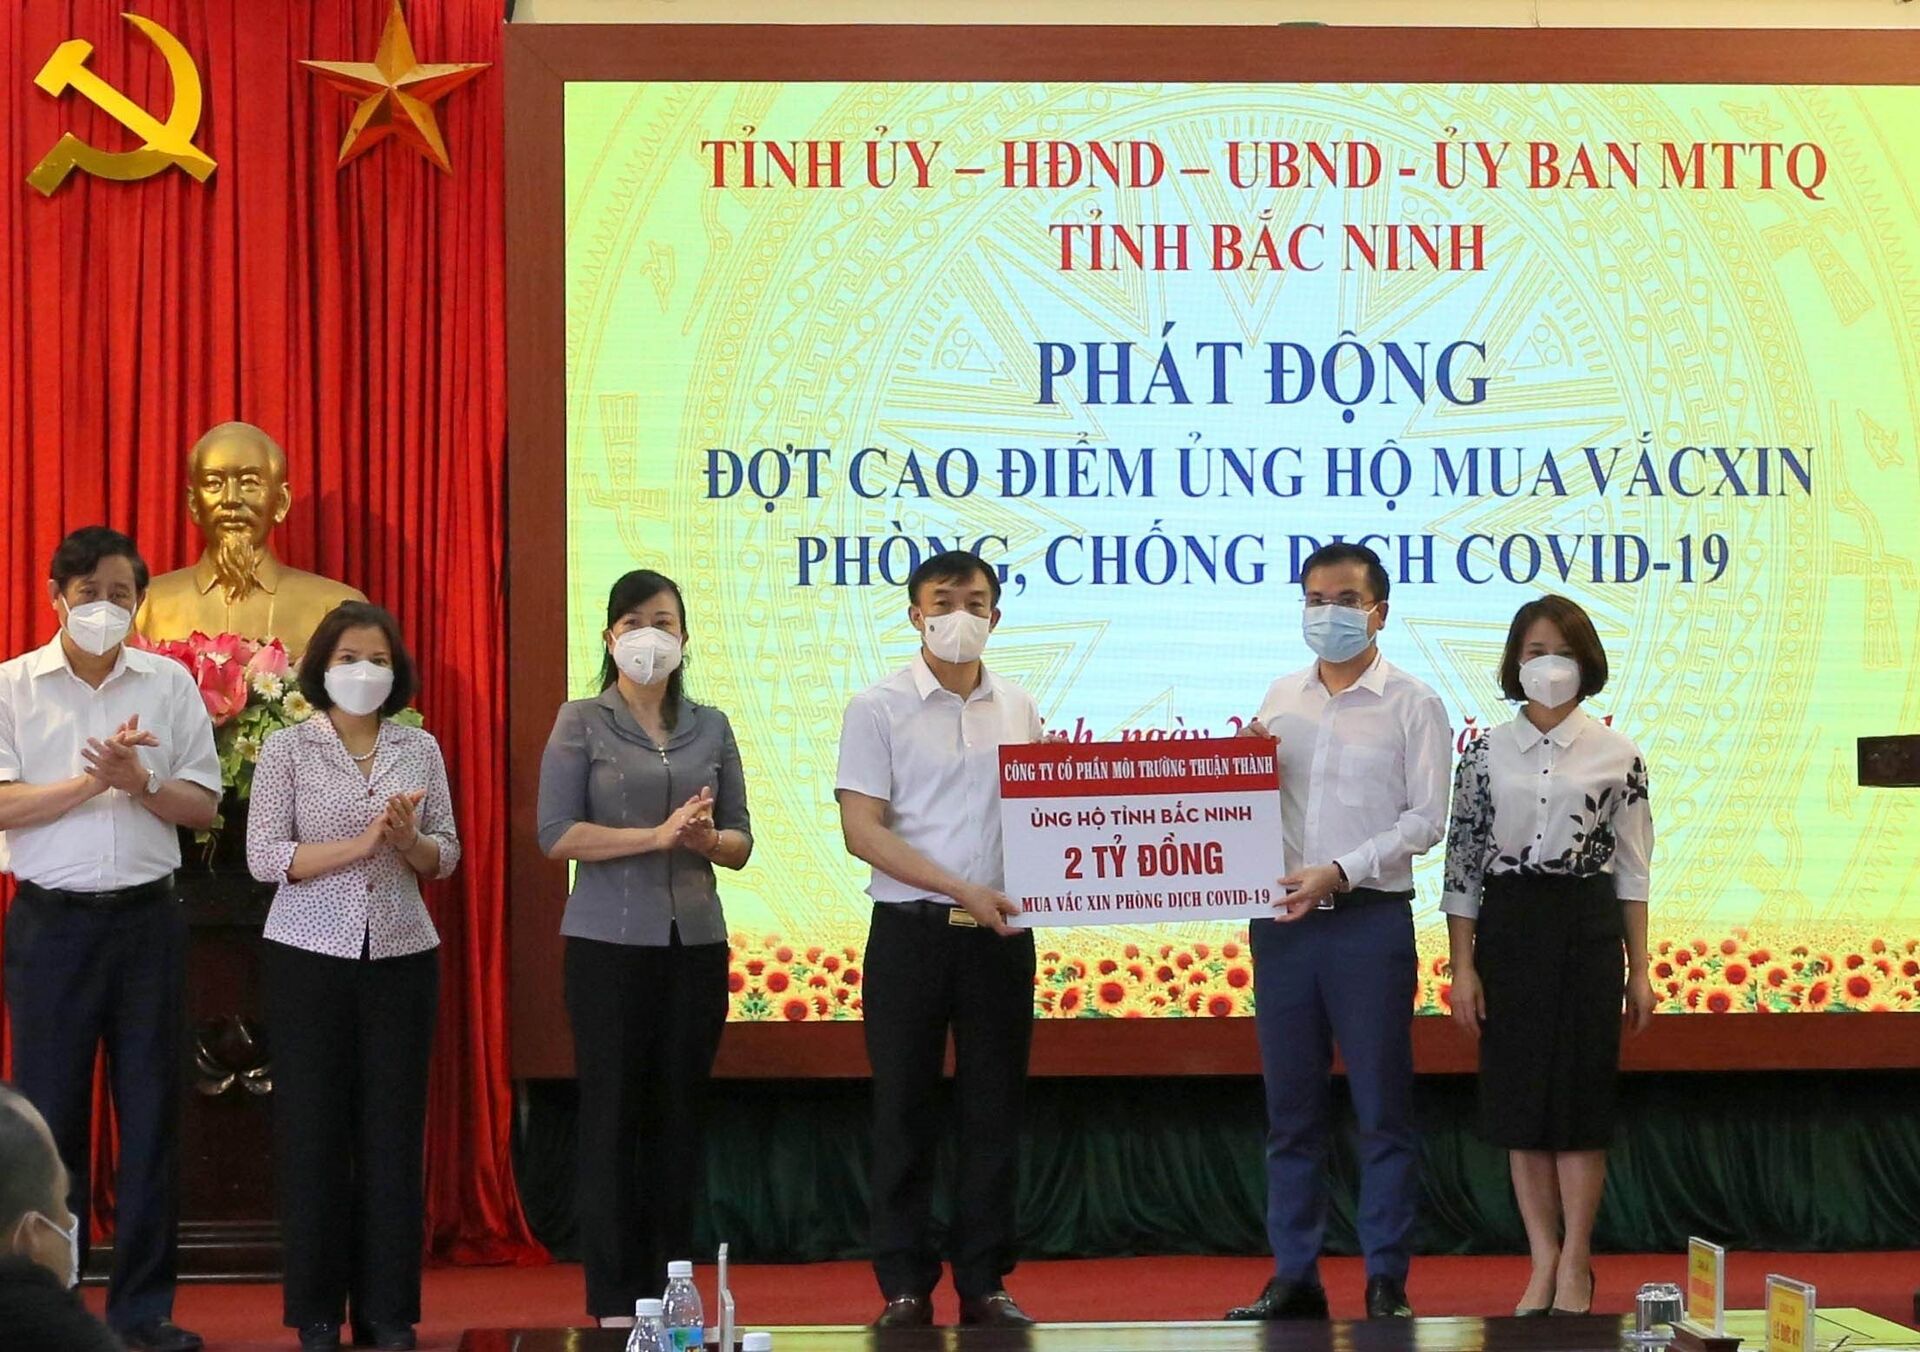 Việt Nam sẽ lập tài khoản cho Quỹ vaccine, người dân có thể ủng hộ công khai, minh bạch - Sputnik Việt Nam, 1920, 28.05.2021